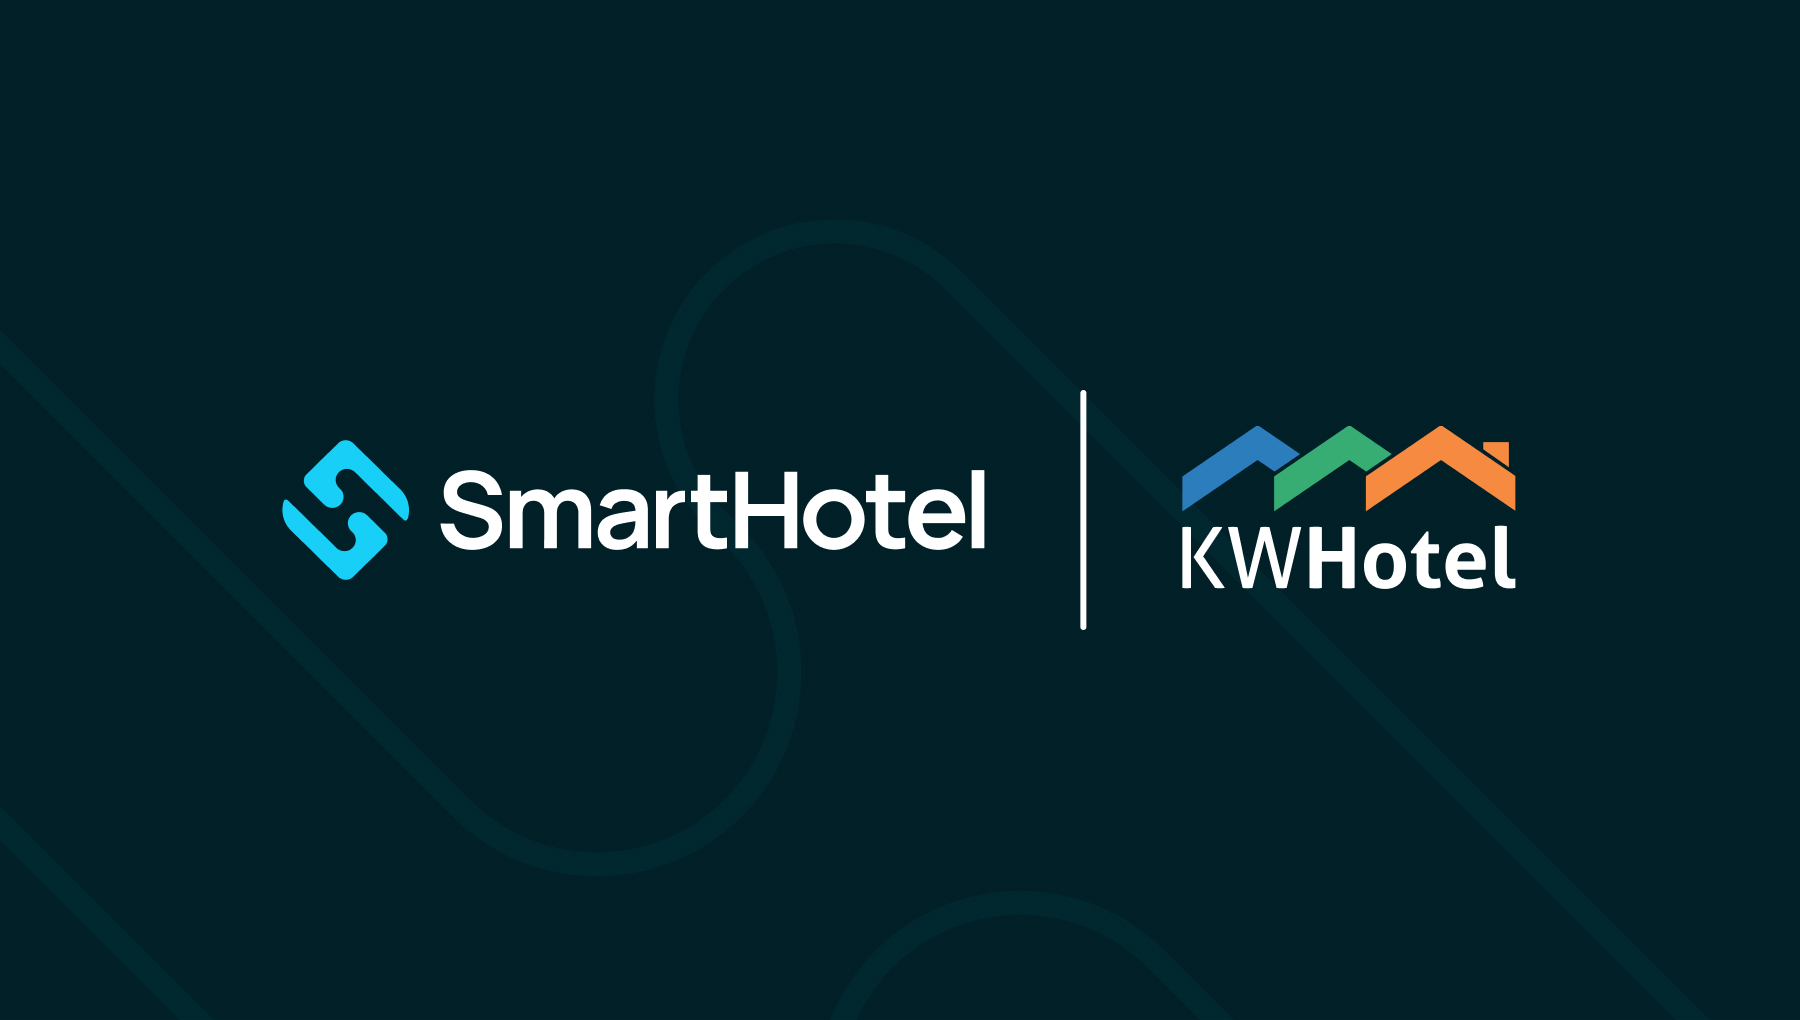 KW Hotel i SmartHotel – integracja systemów niezbędna w erze technologii